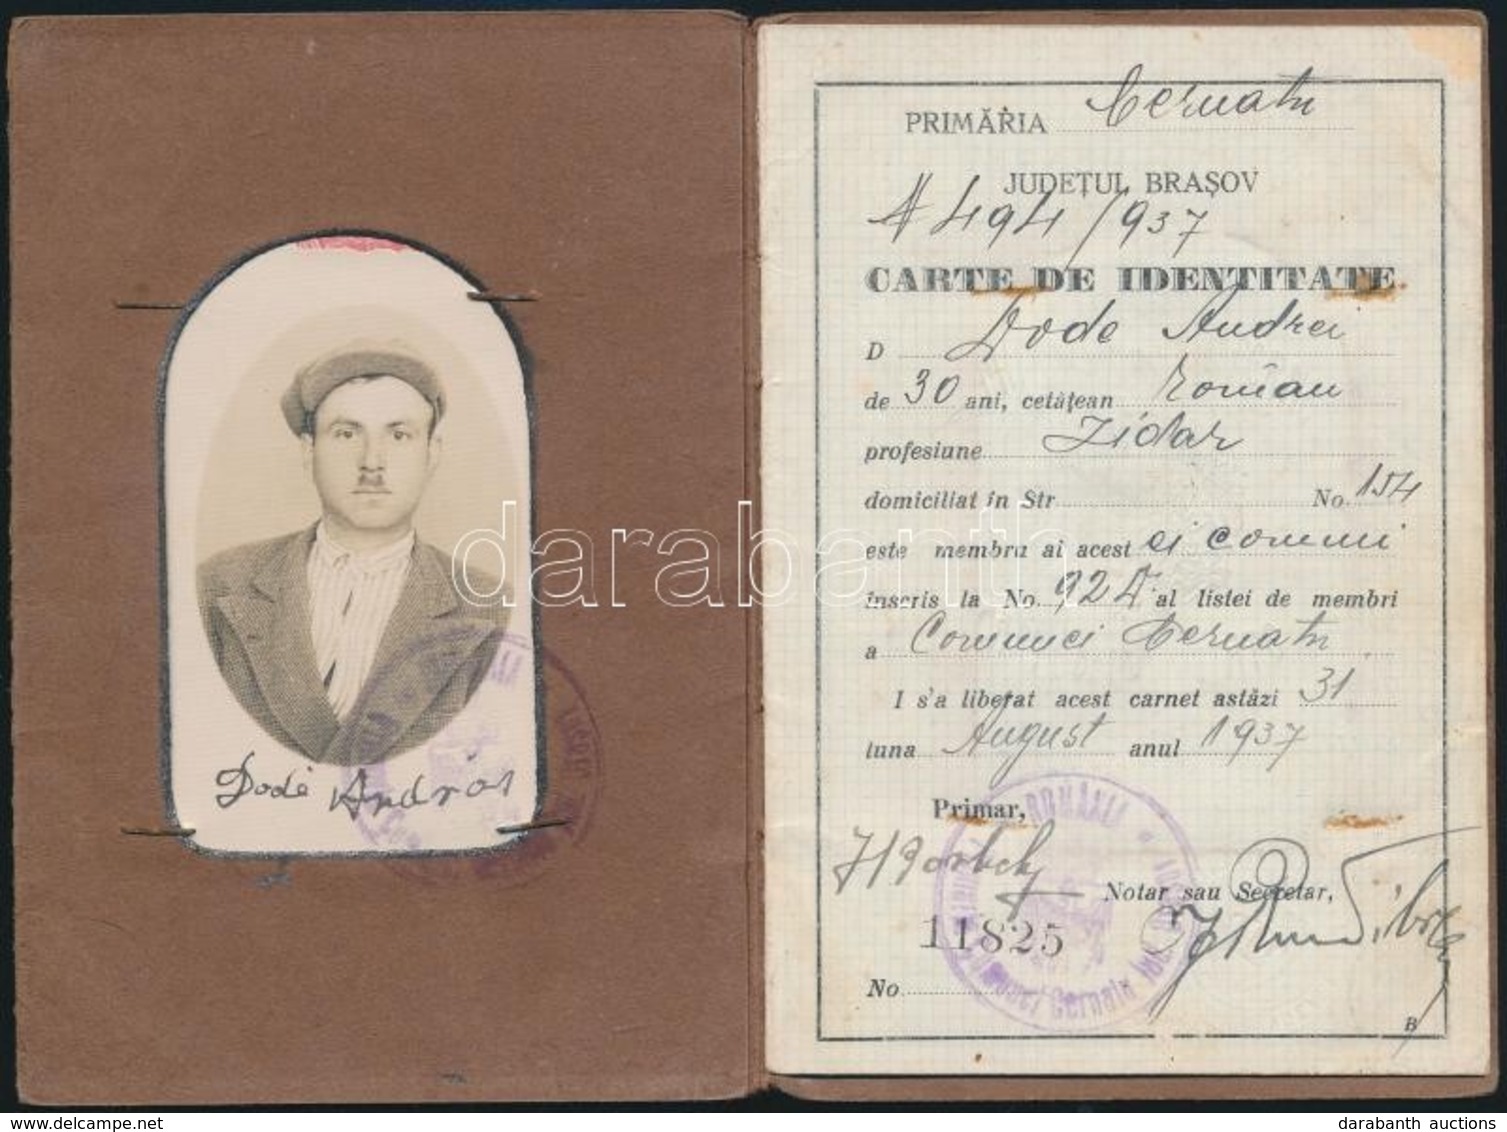 1937 Román Fényképes Személyi Igazolvány, Okmánybélyegekkel /
1937 Romanian ID - Unclassified